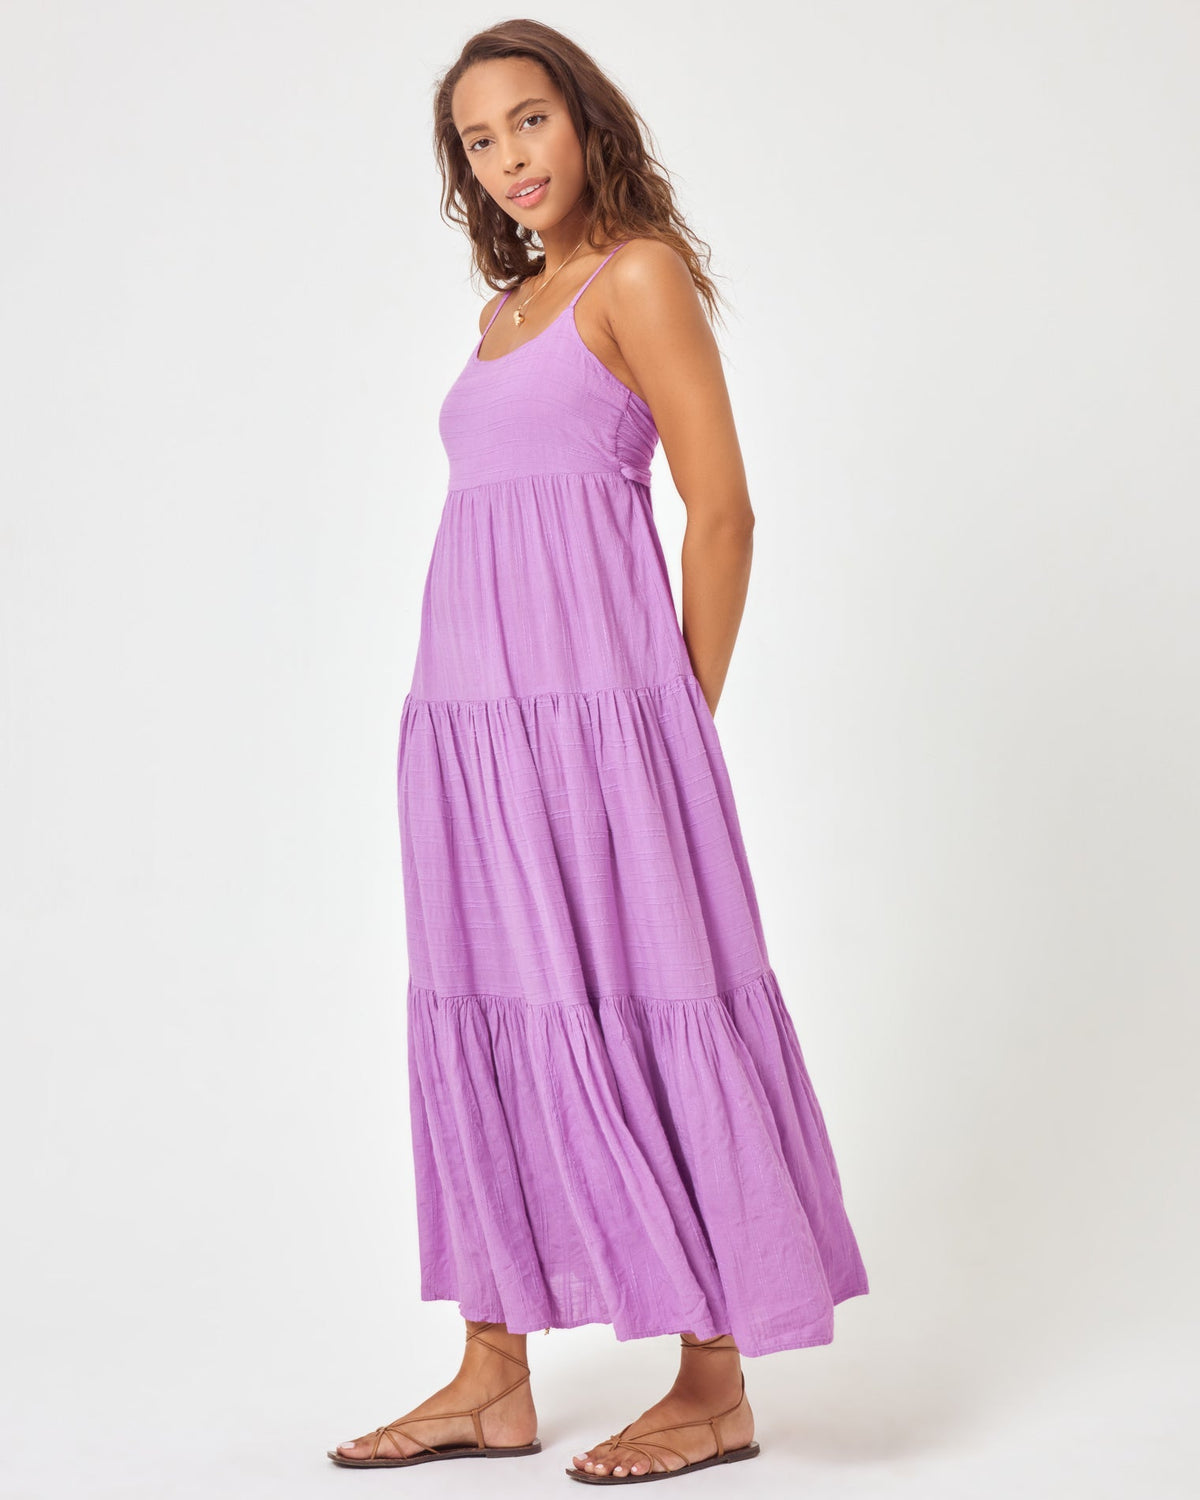 Santorini Dress Jewel | Model: Natalie (size: S) | Hover